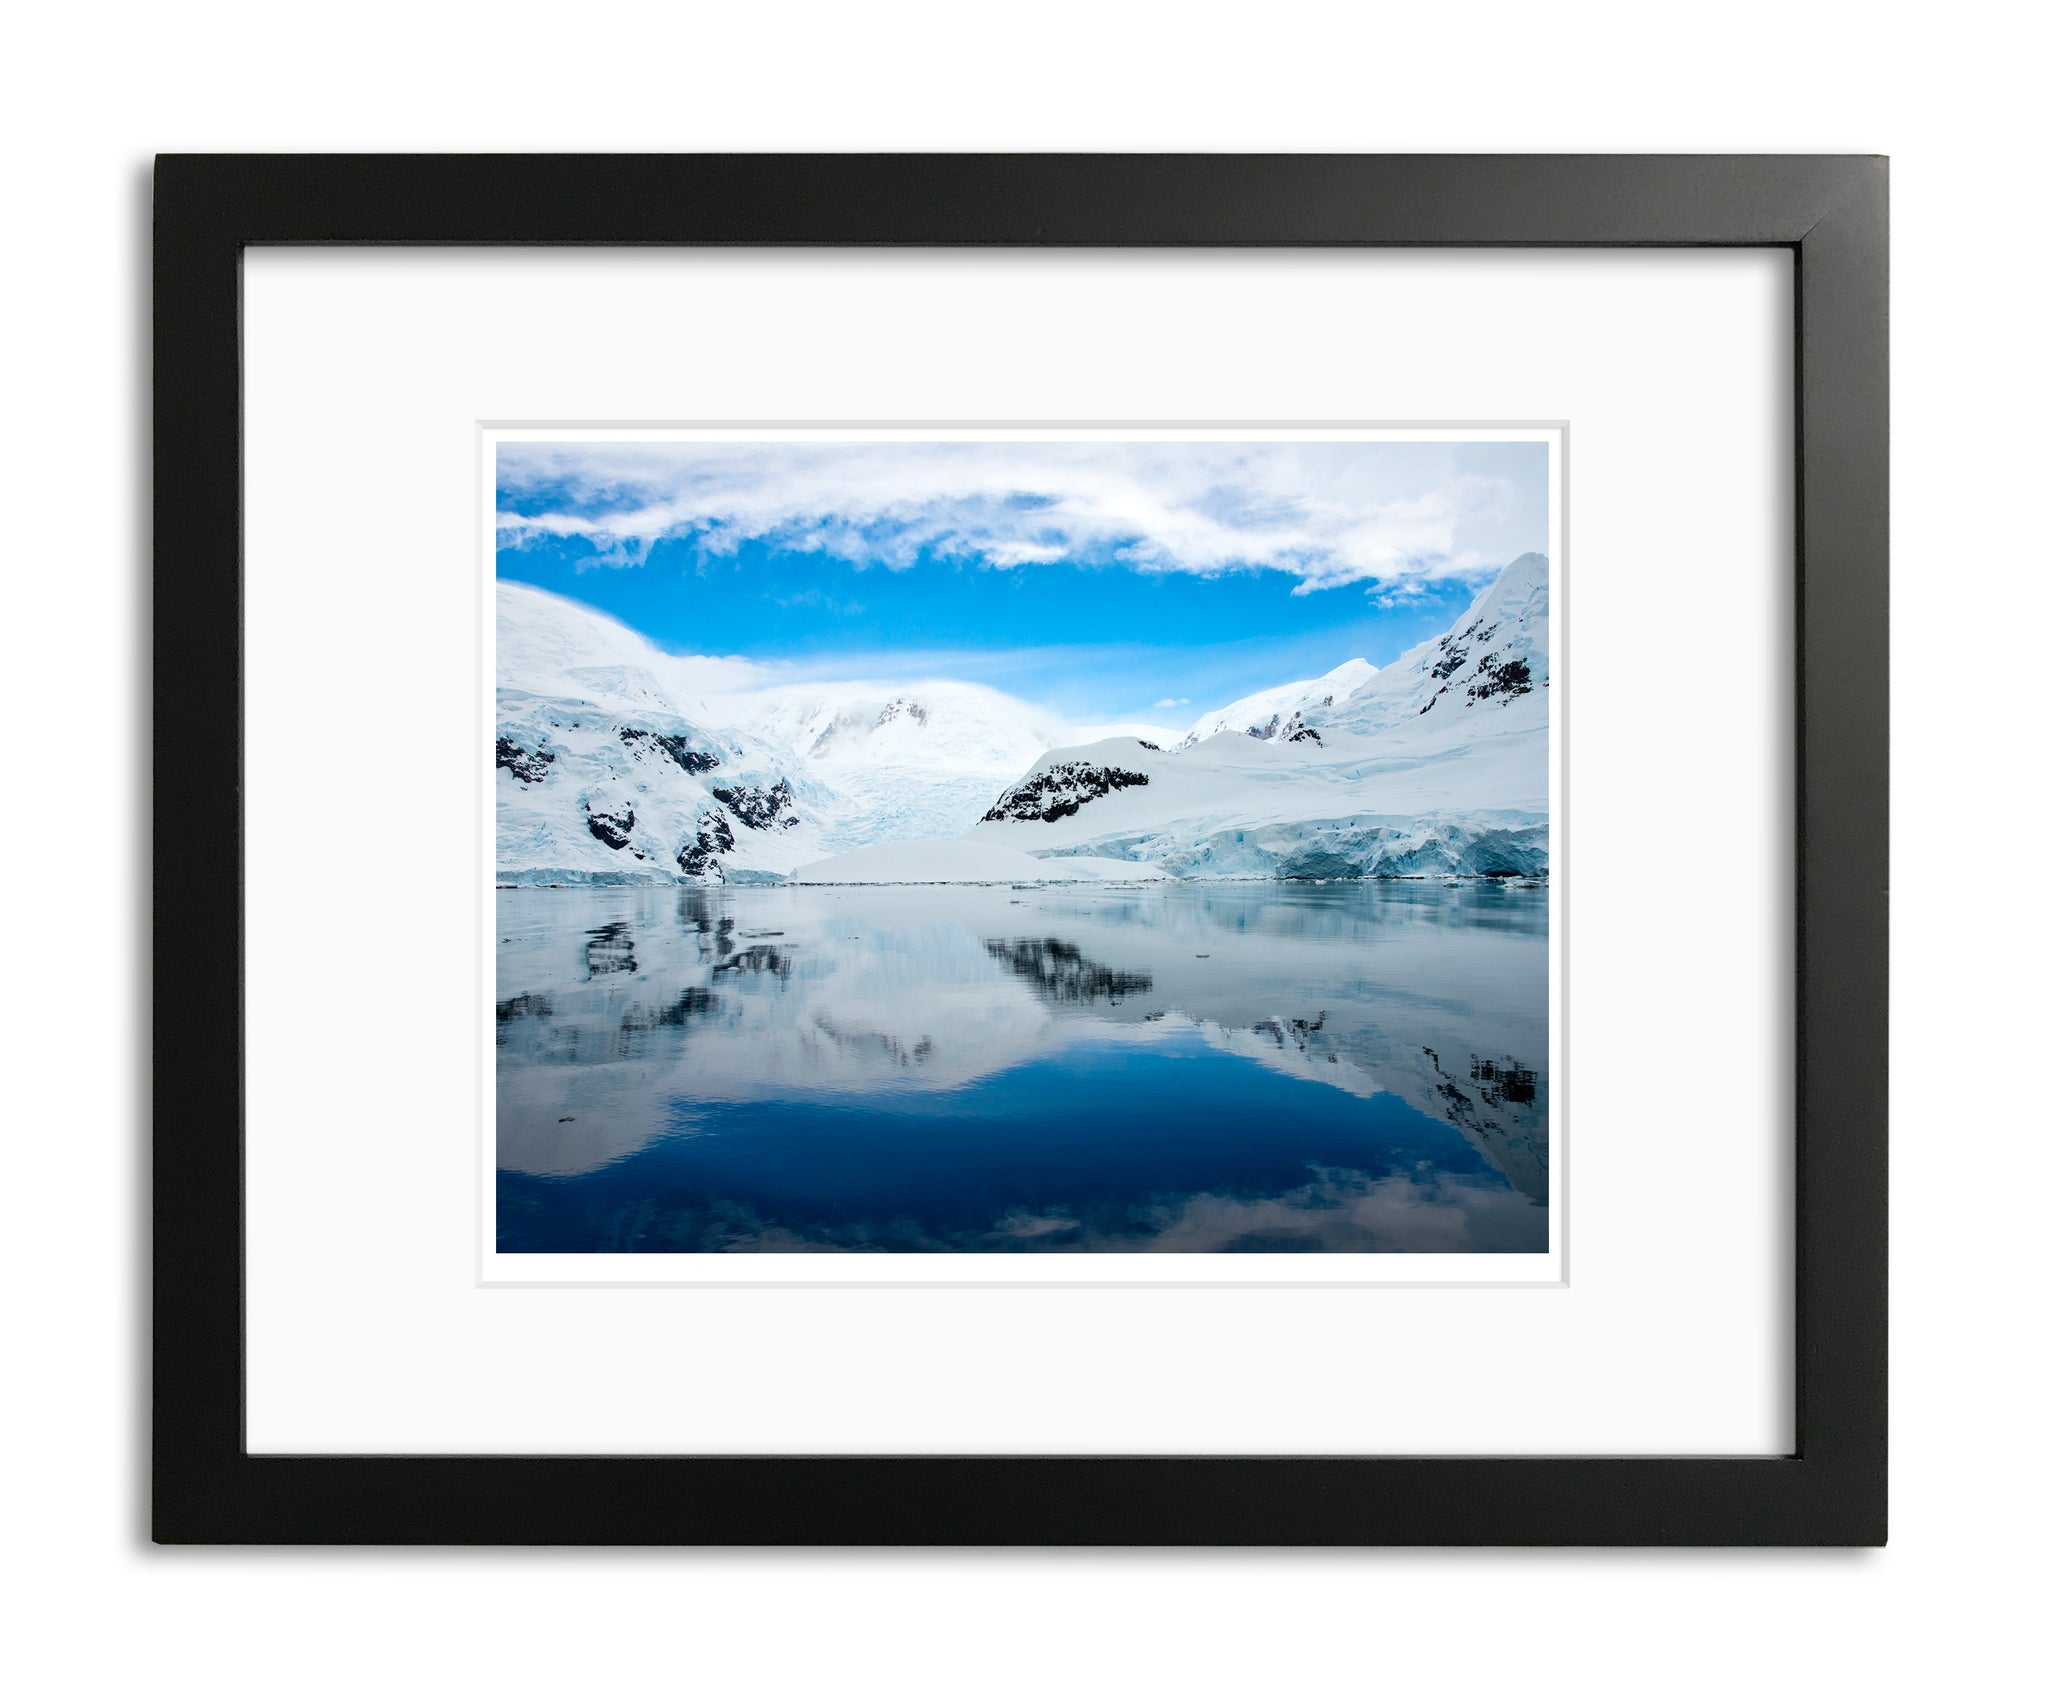 Reflections, Antarctica shoreline, by Robert Ross